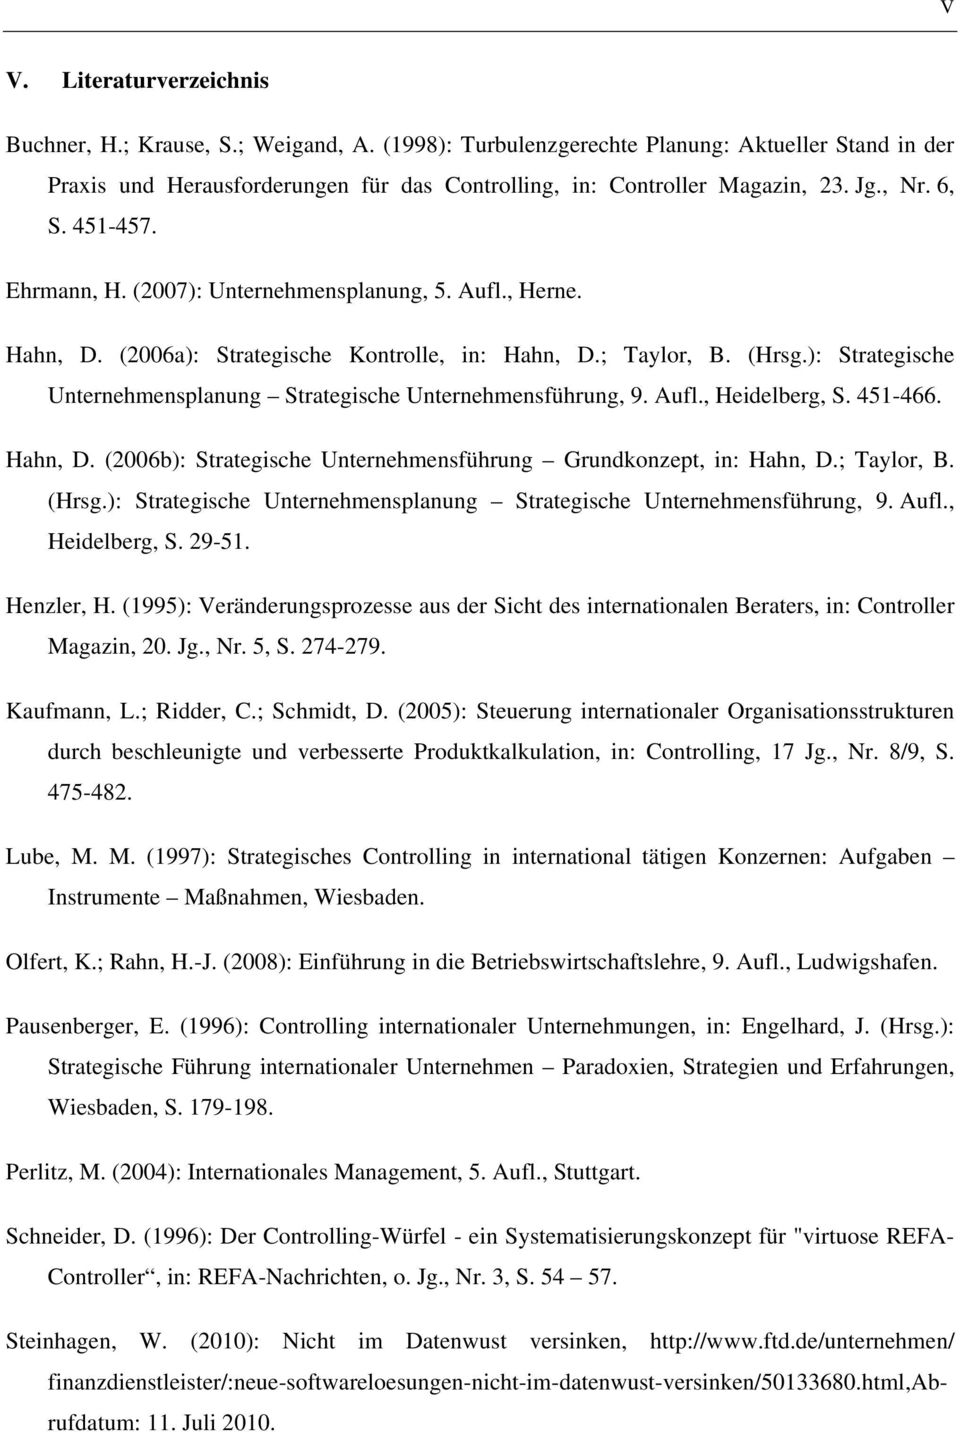 ): Strategische Unternehmensplanung Strategische Unternehmensführung, 9. Aufl., Heidelberg, S. 451-466. Hahn, D. (2006b): Strategische Unternehmensführung Grundkonzept, in: Hahn, D.; Taylor, B. (Hrsg.